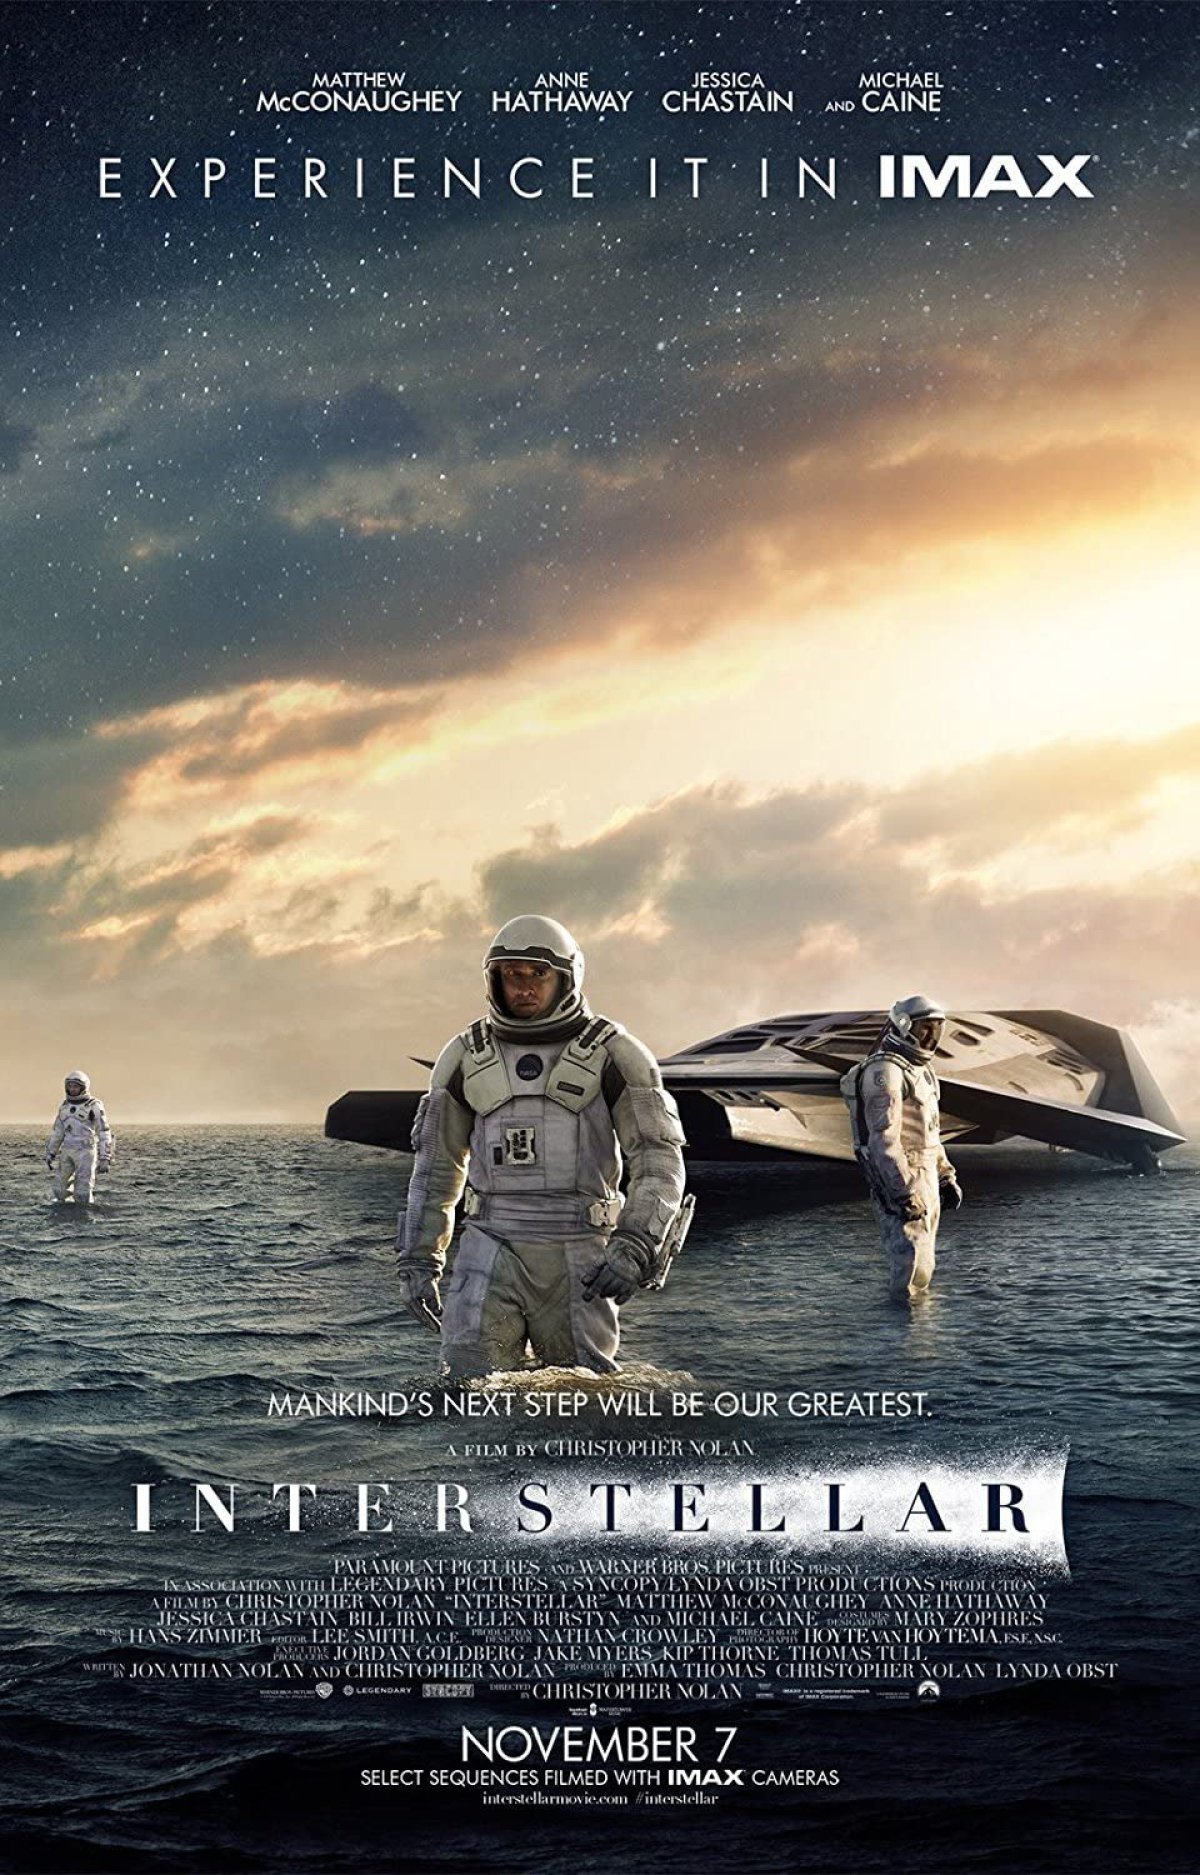 Interstellar (2014), Christopher Nolan